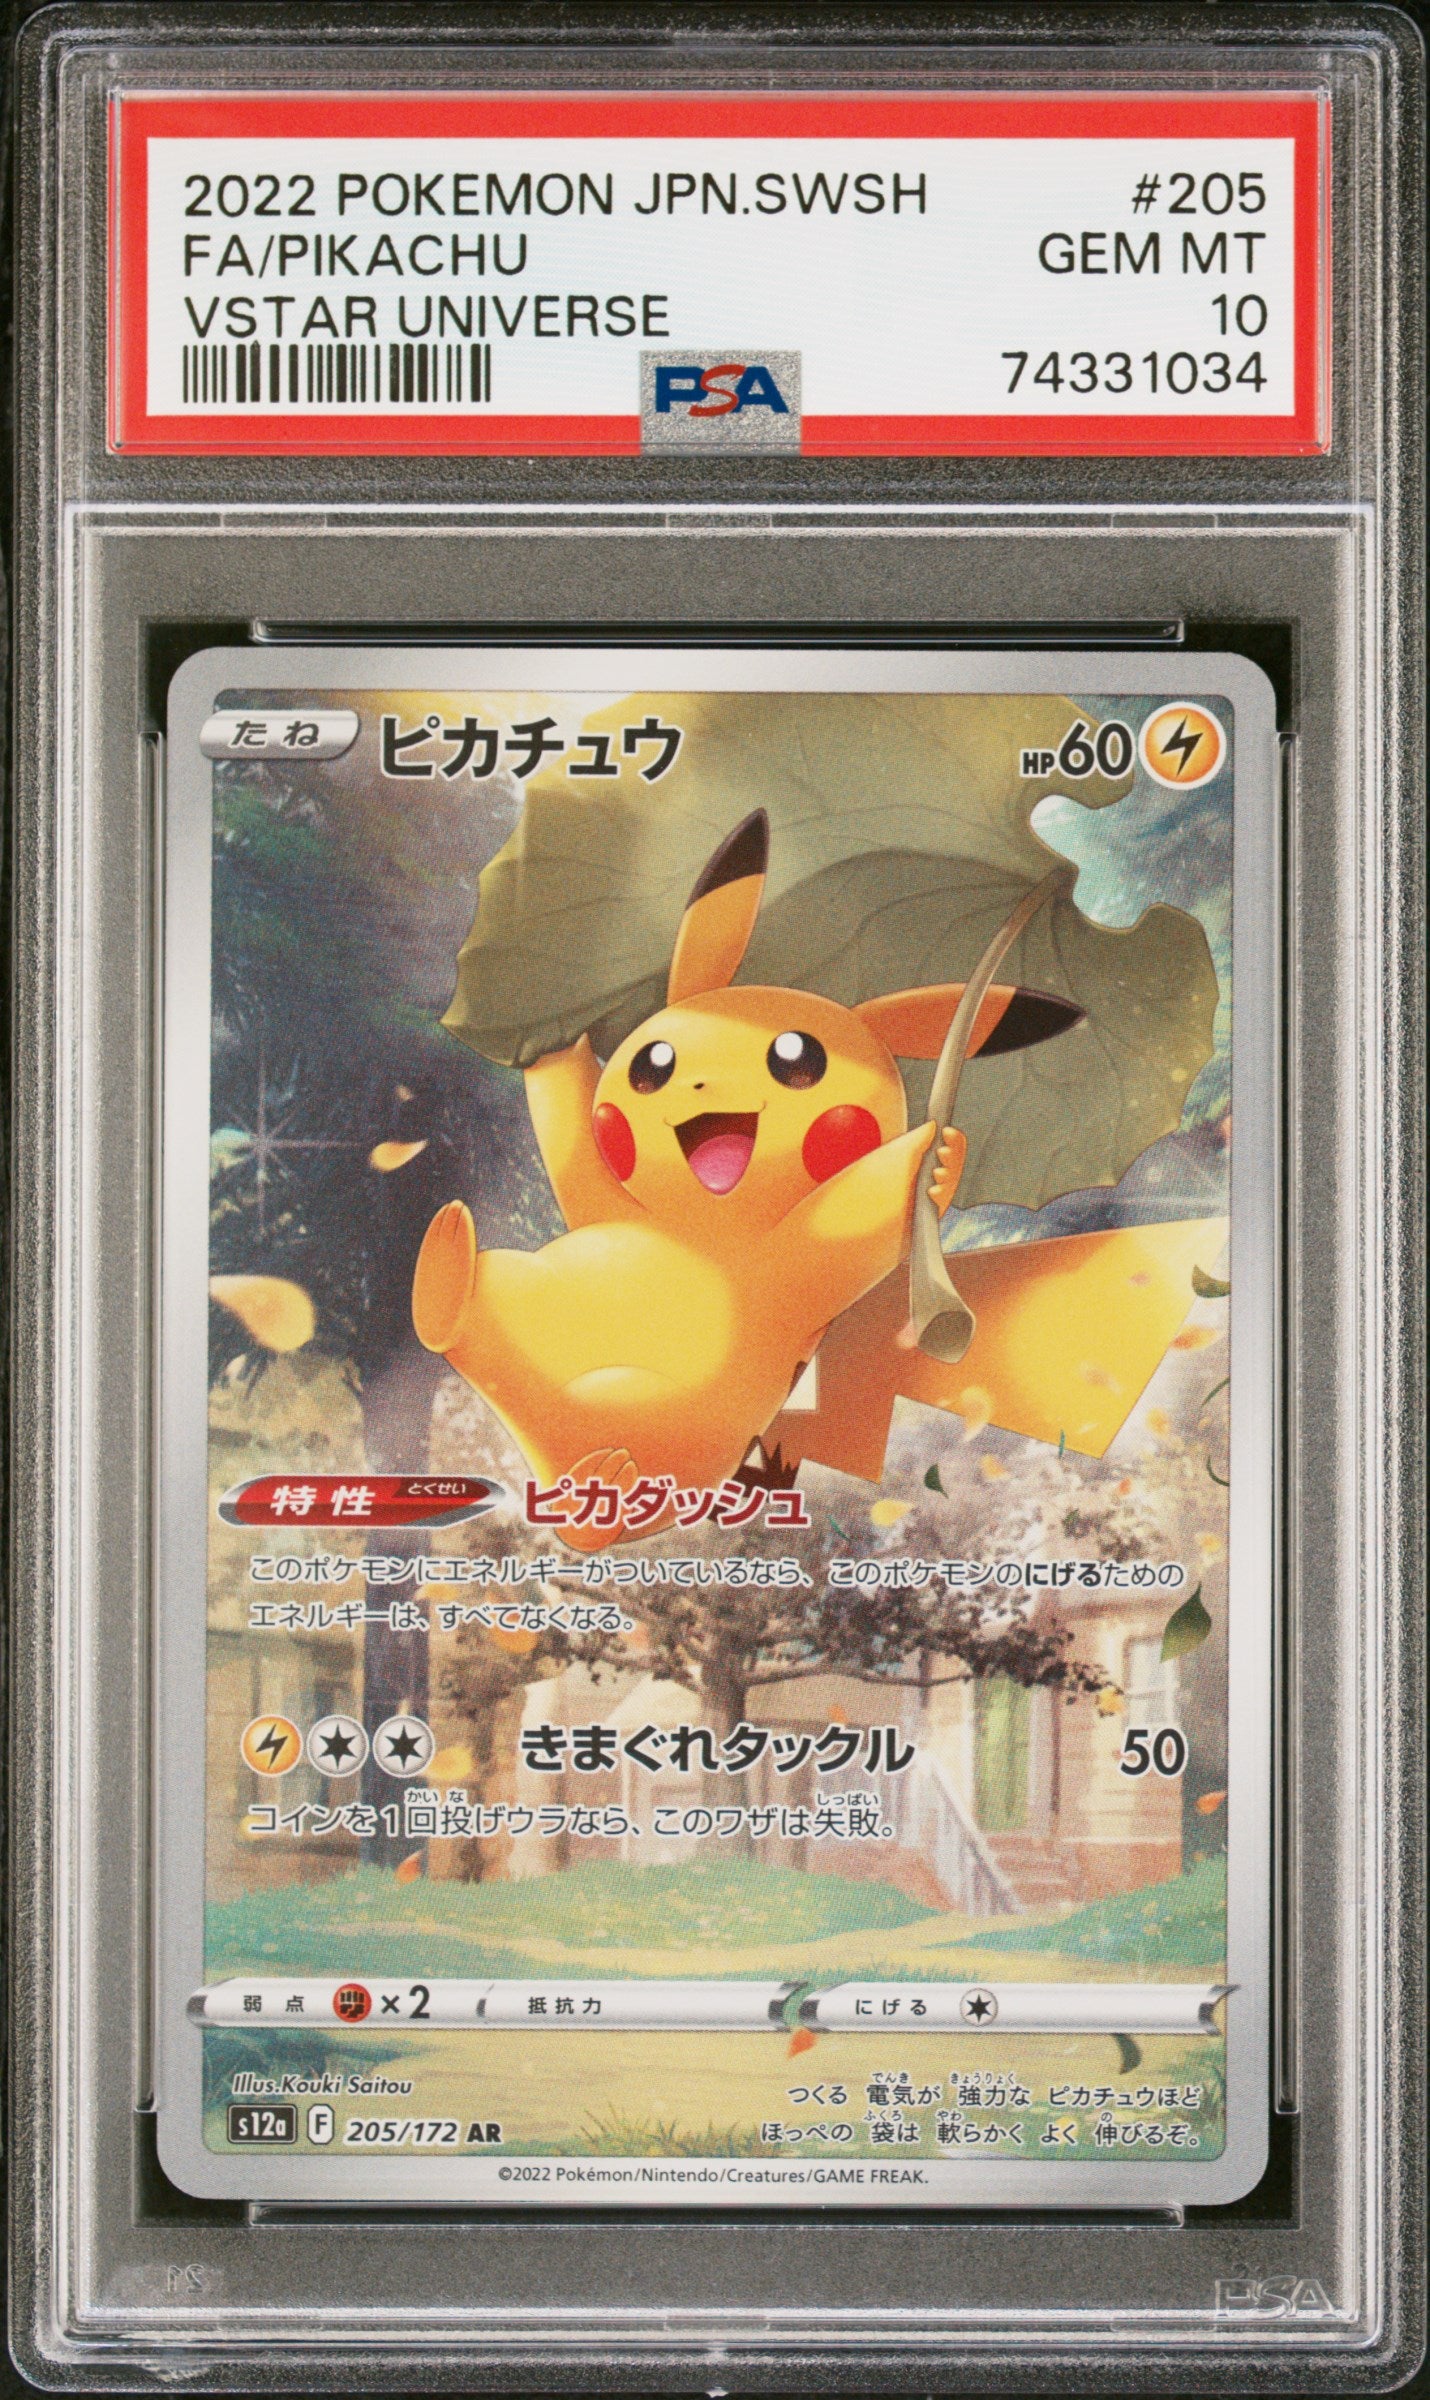 PSA 10] Pokemon Card “Pikachu” s12a 205/172 (AR) Japanese Version – K-TCG